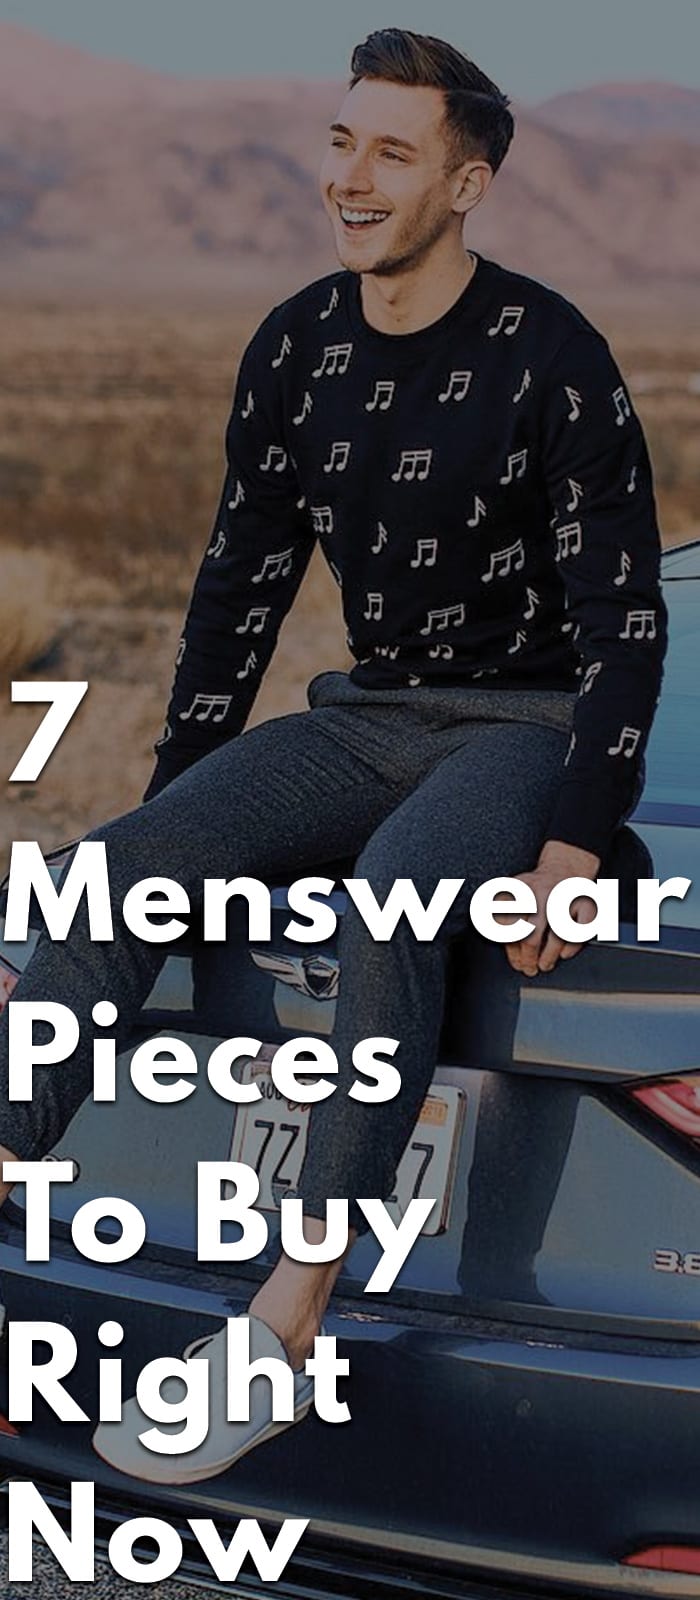 7 Menswear Pieces To Buy